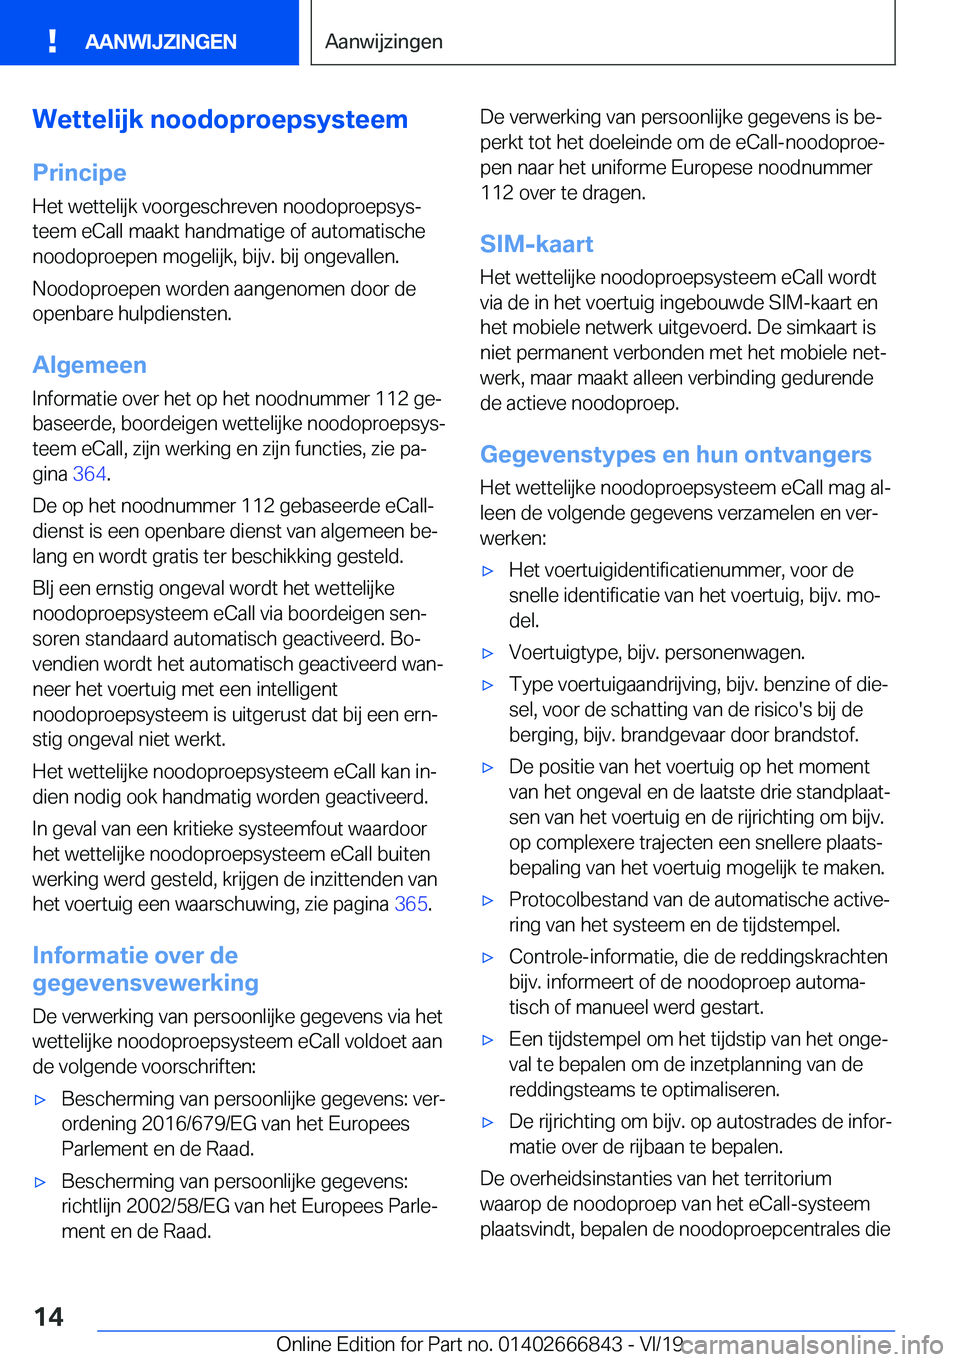 BMW X3 M 2020  Instructieboekjes (in Dutch) �W�e�t�t�e�l�i�j�k��n�o�o�d�o�p�r�o�e�p�s�y�s�t�e�e�m
�P�r�i�n�c�i�p�e �H�e�t��w�e�t�t�e�l�i�j�k��v�o�o�r�g�e�s�c�h�r�e�v�e�n��n�o�o�d�o�p�r�o�e�p�s�y�sj
�t�e�e�m��e�C�a�l�l��m�a�a�k�t��h�a�n�